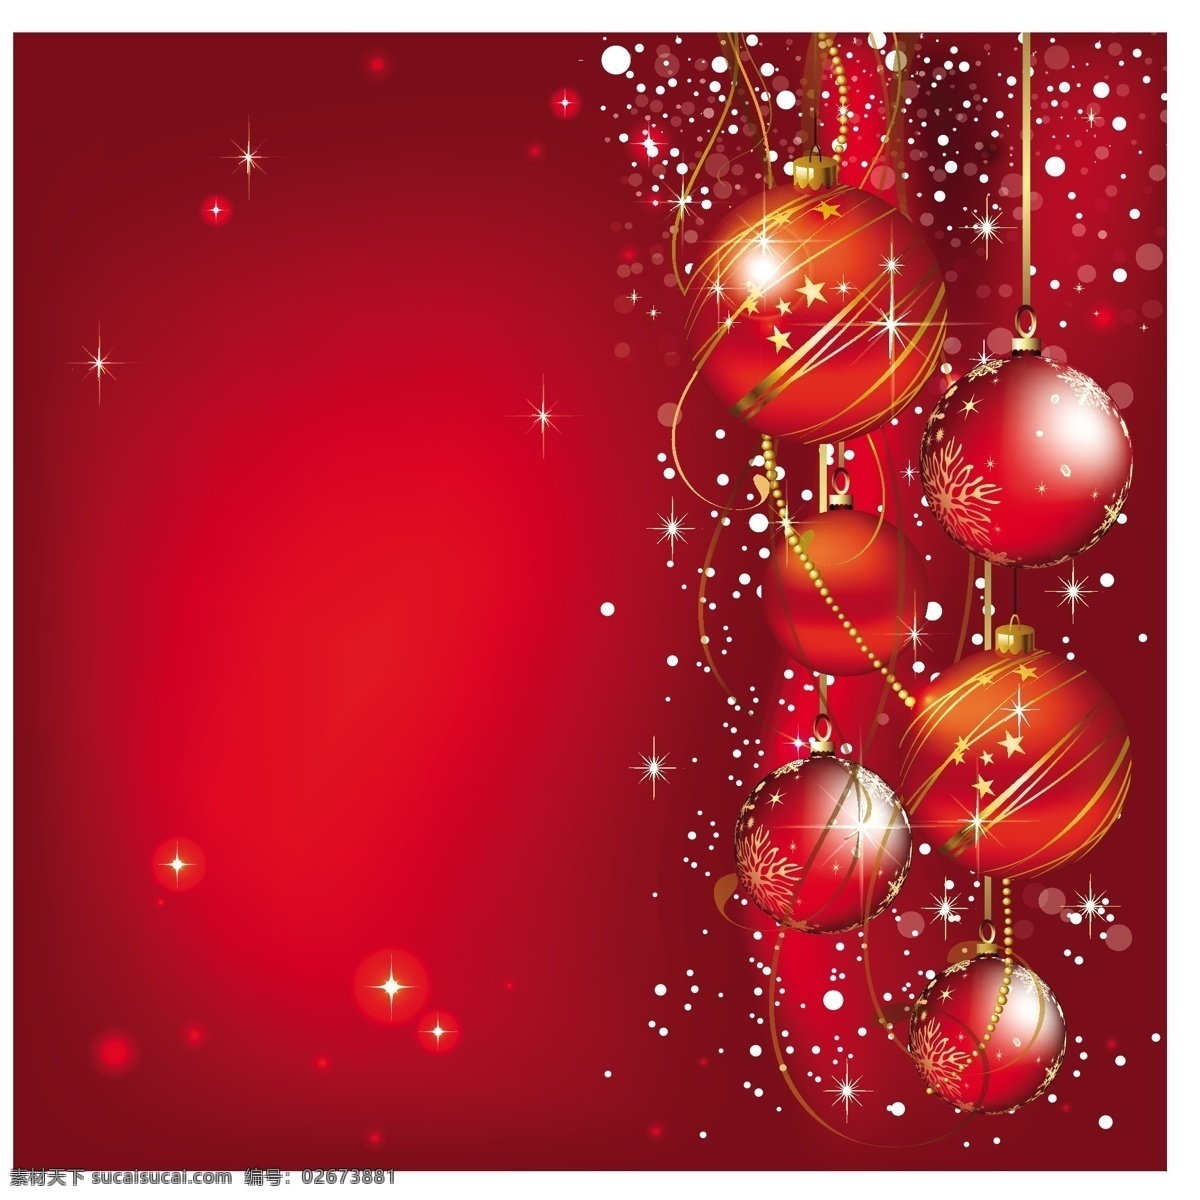 红 球 圣诞贺卡 圣诞节 圣诞的问候 问候问候 红色的 红色的球 圣诞红球矢量 圣诞红球 圣诞 红色 矢量图 其他矢量图